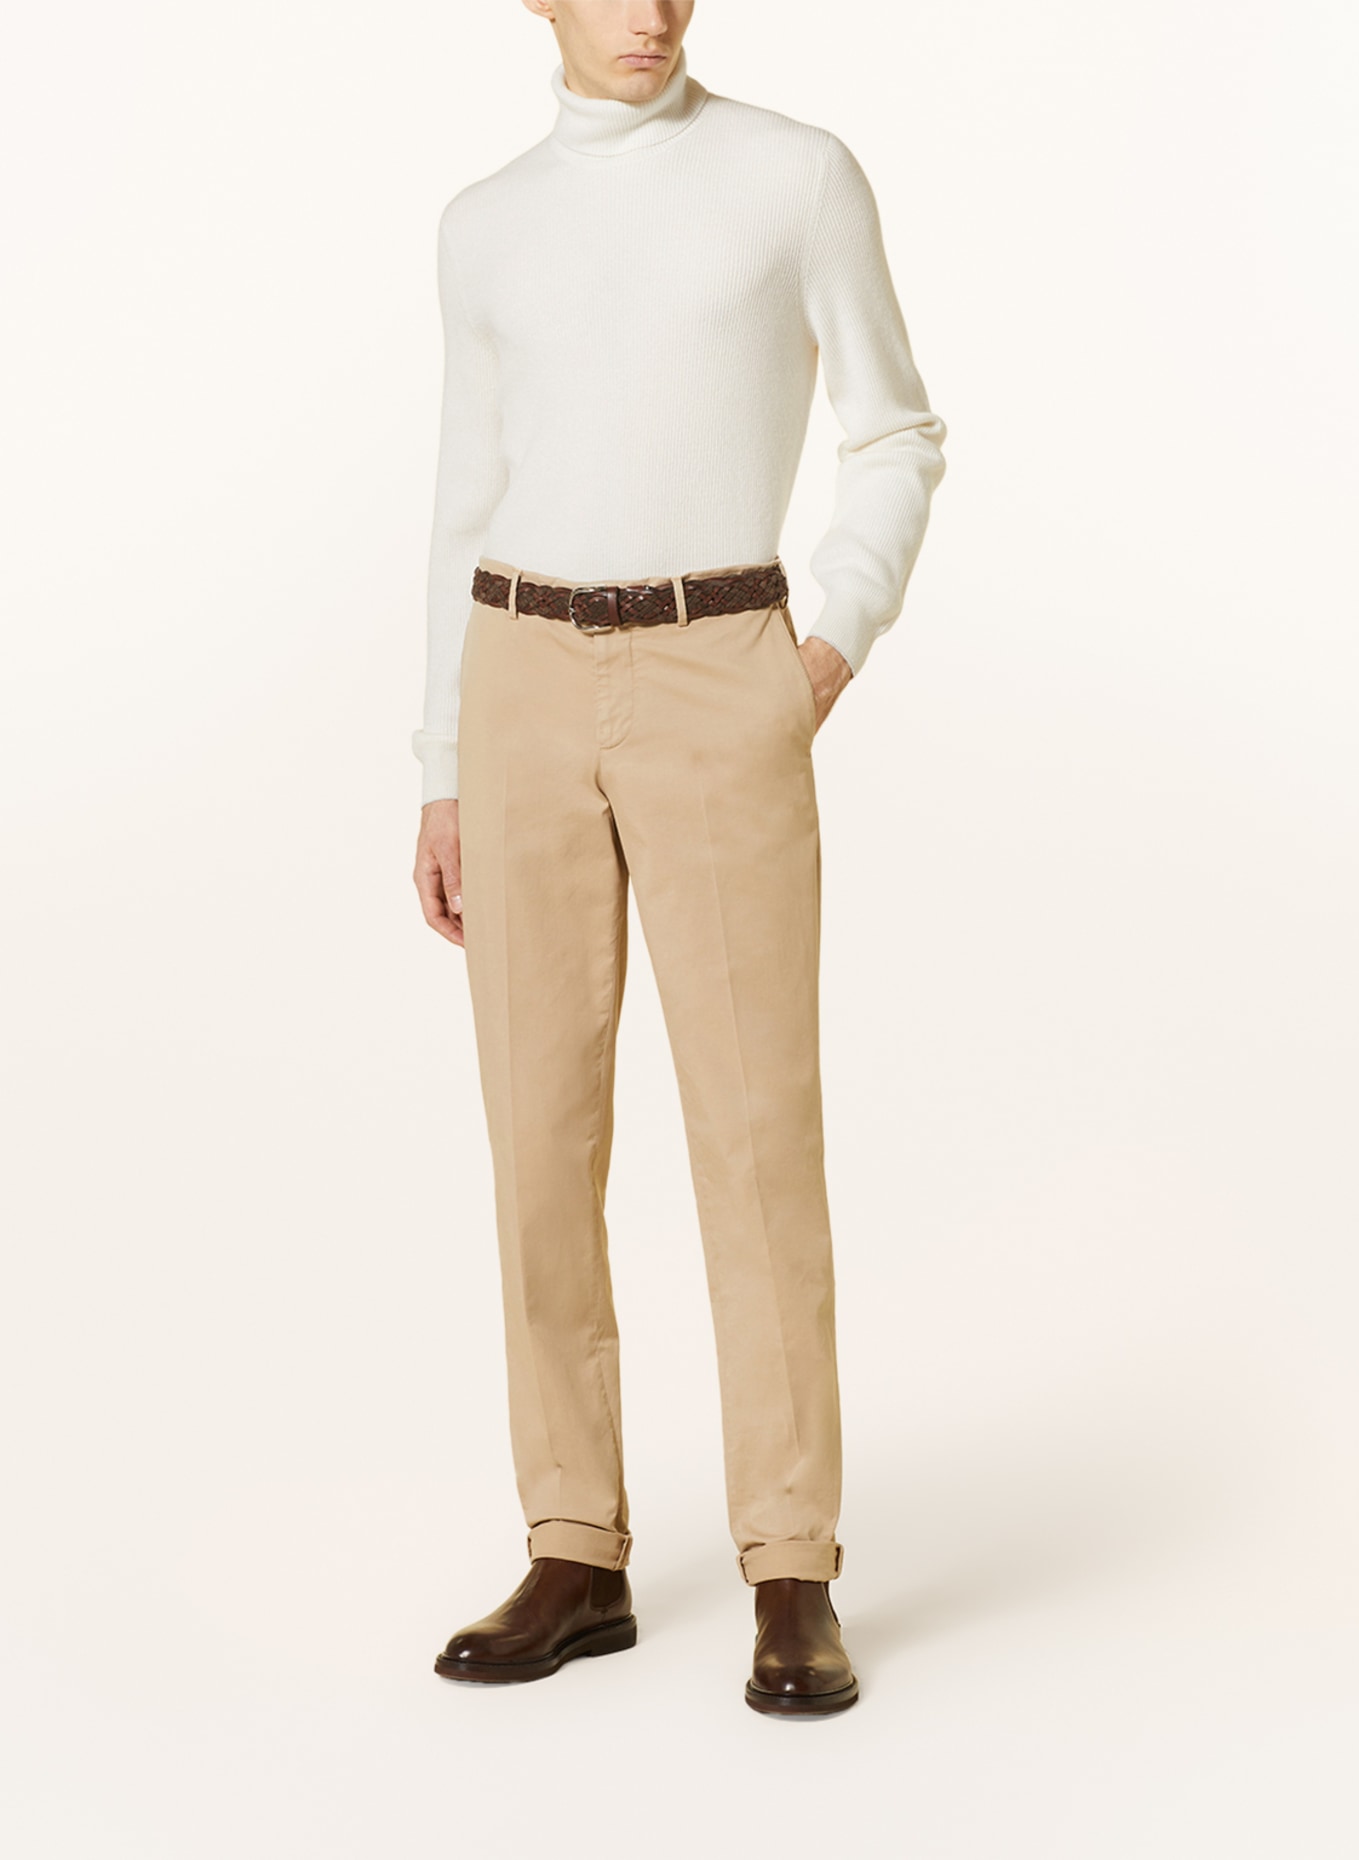 BRUNELLO CUCINELLI Turtleneck sweater in cashmere, Color: ECRU (Image 3)